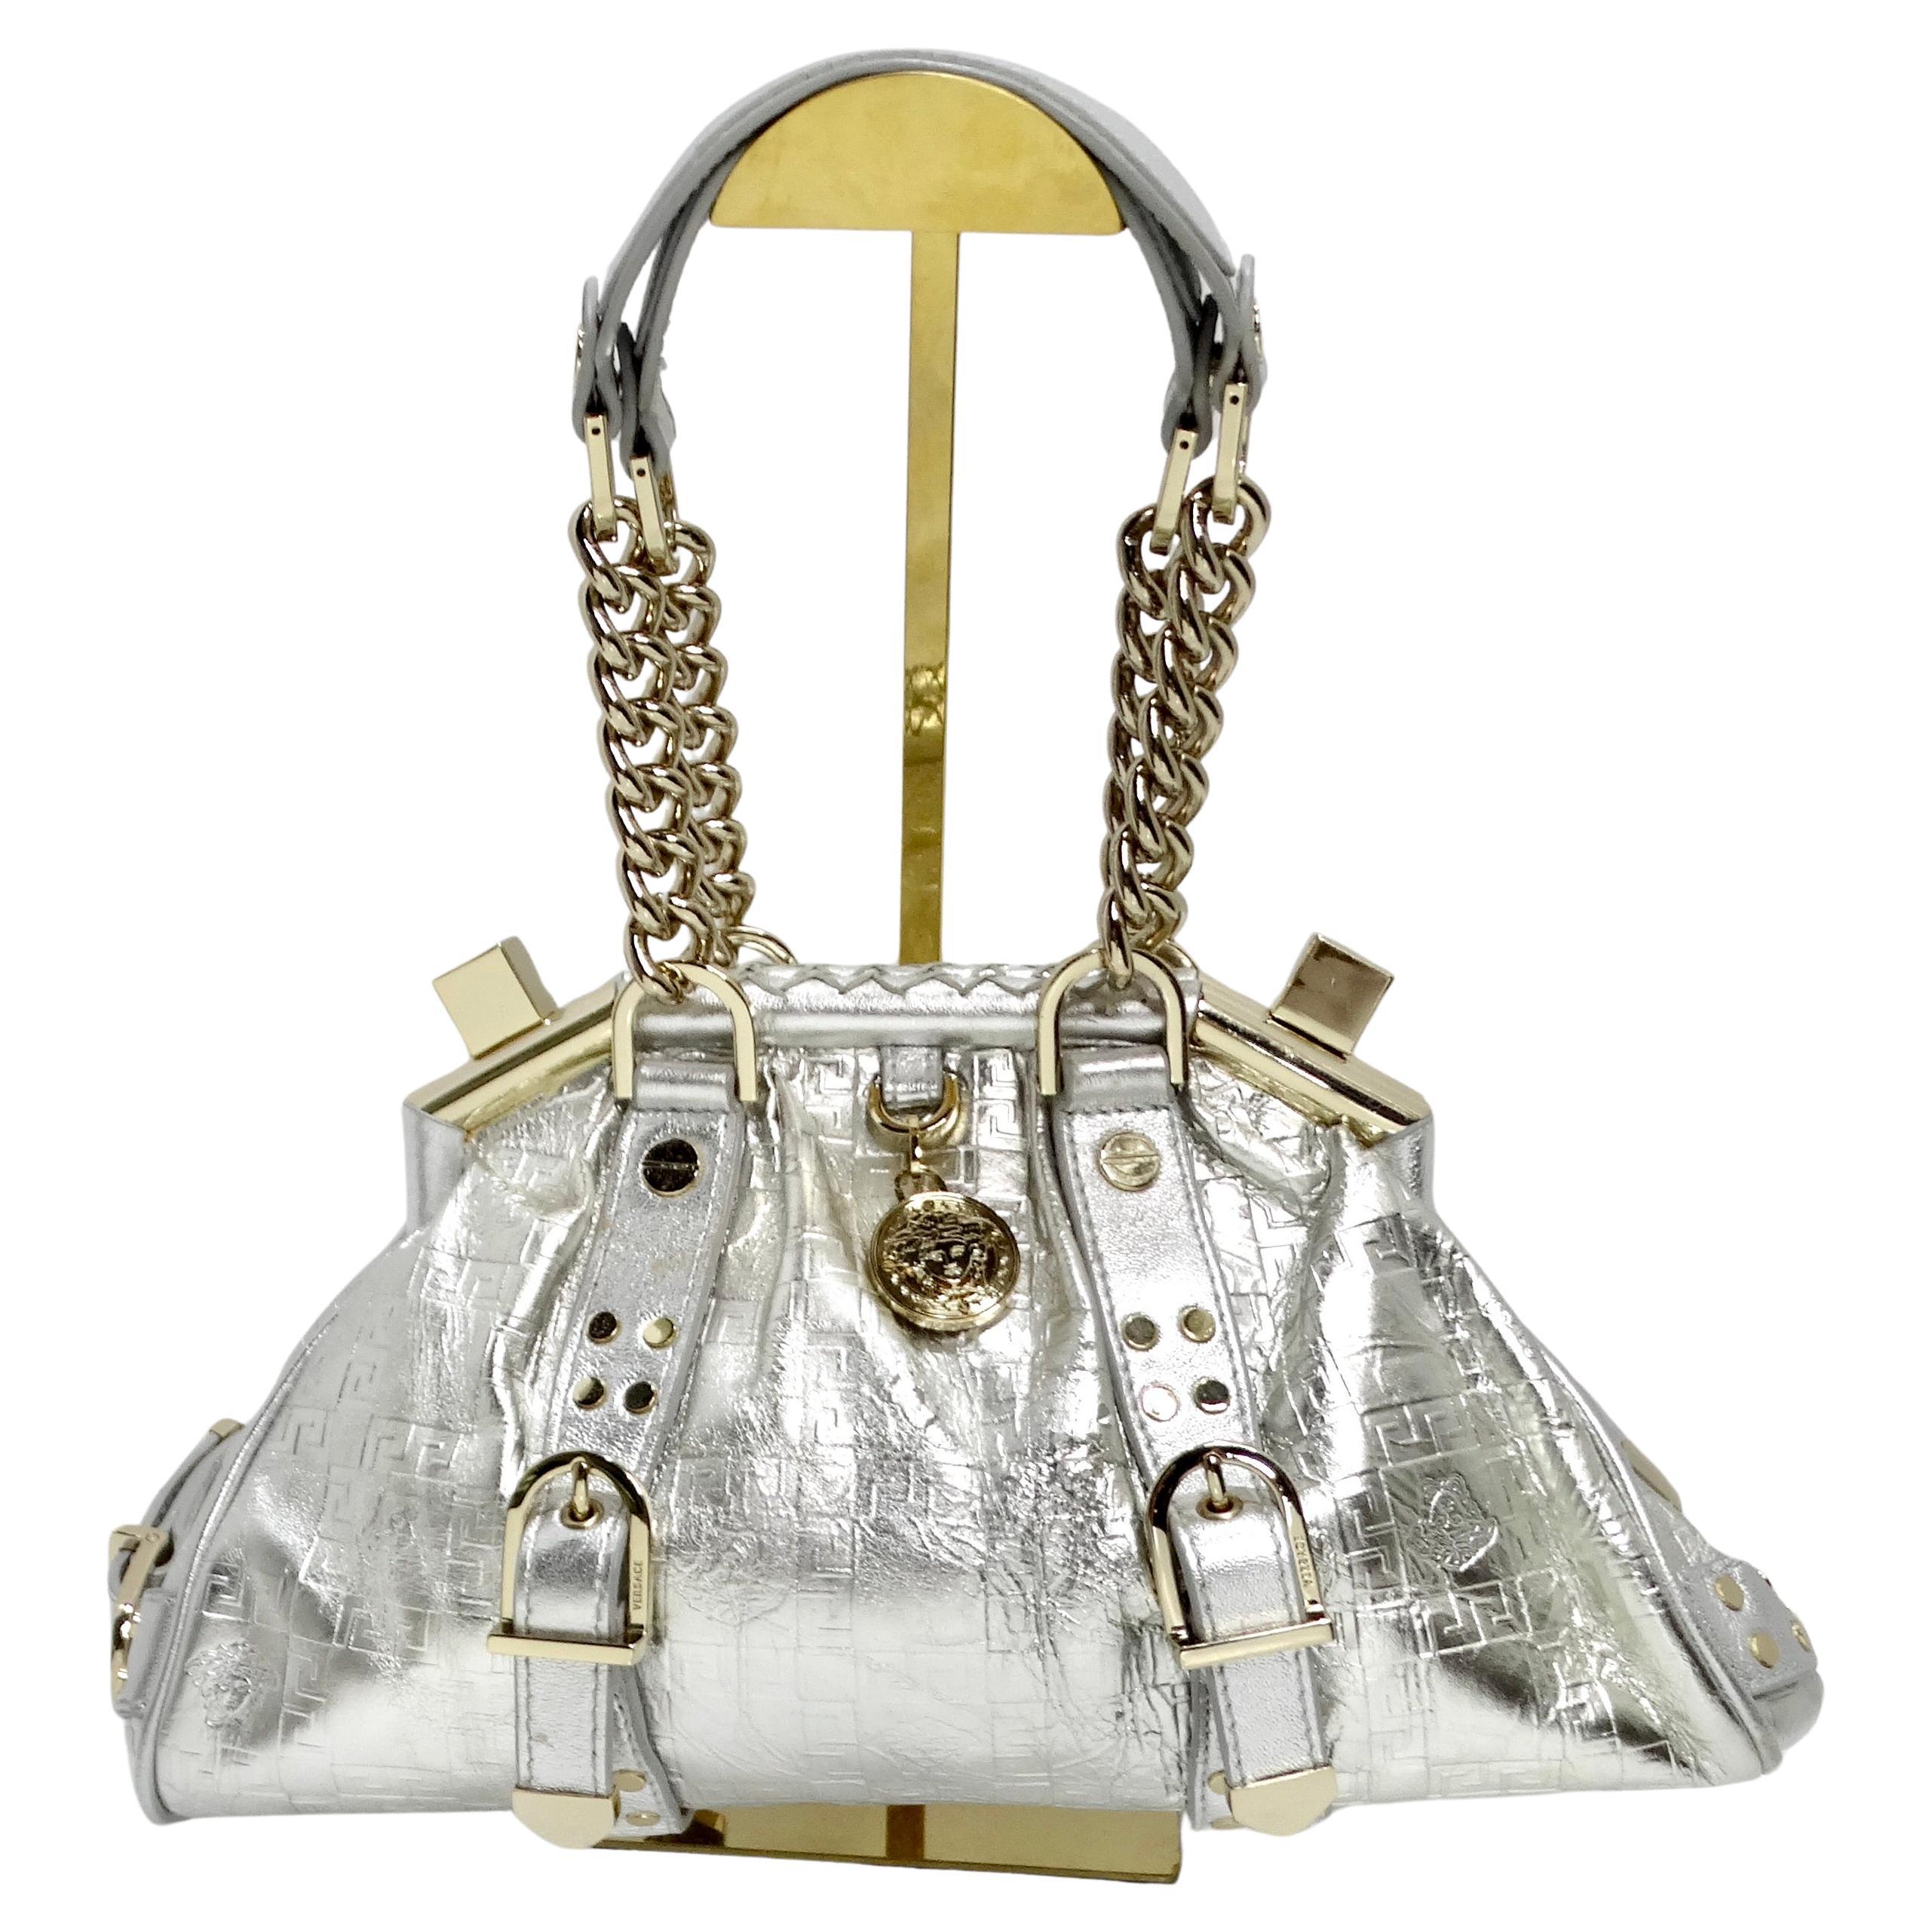 How do I spot a genuine Versace handbag?